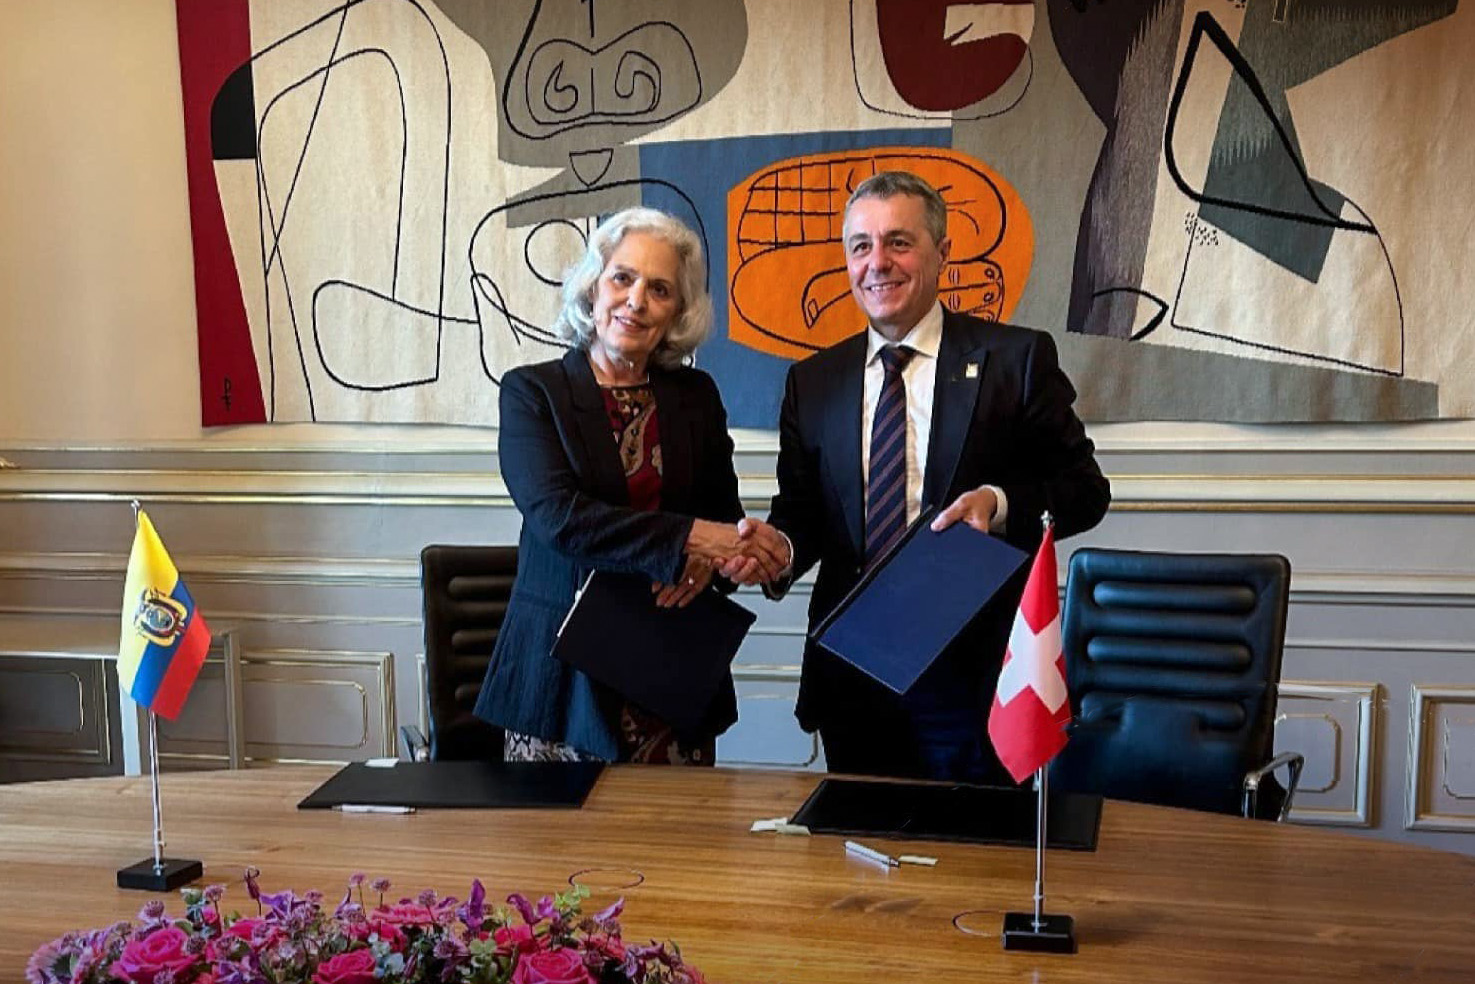 وقّعت سفيرة الإكوادور في برن، فيرونيكا بوستامانتي، ووزير الخارجية السويسري، إينياتسيو كاسيس، على الاتفاقية في 24 يونيو 2024.